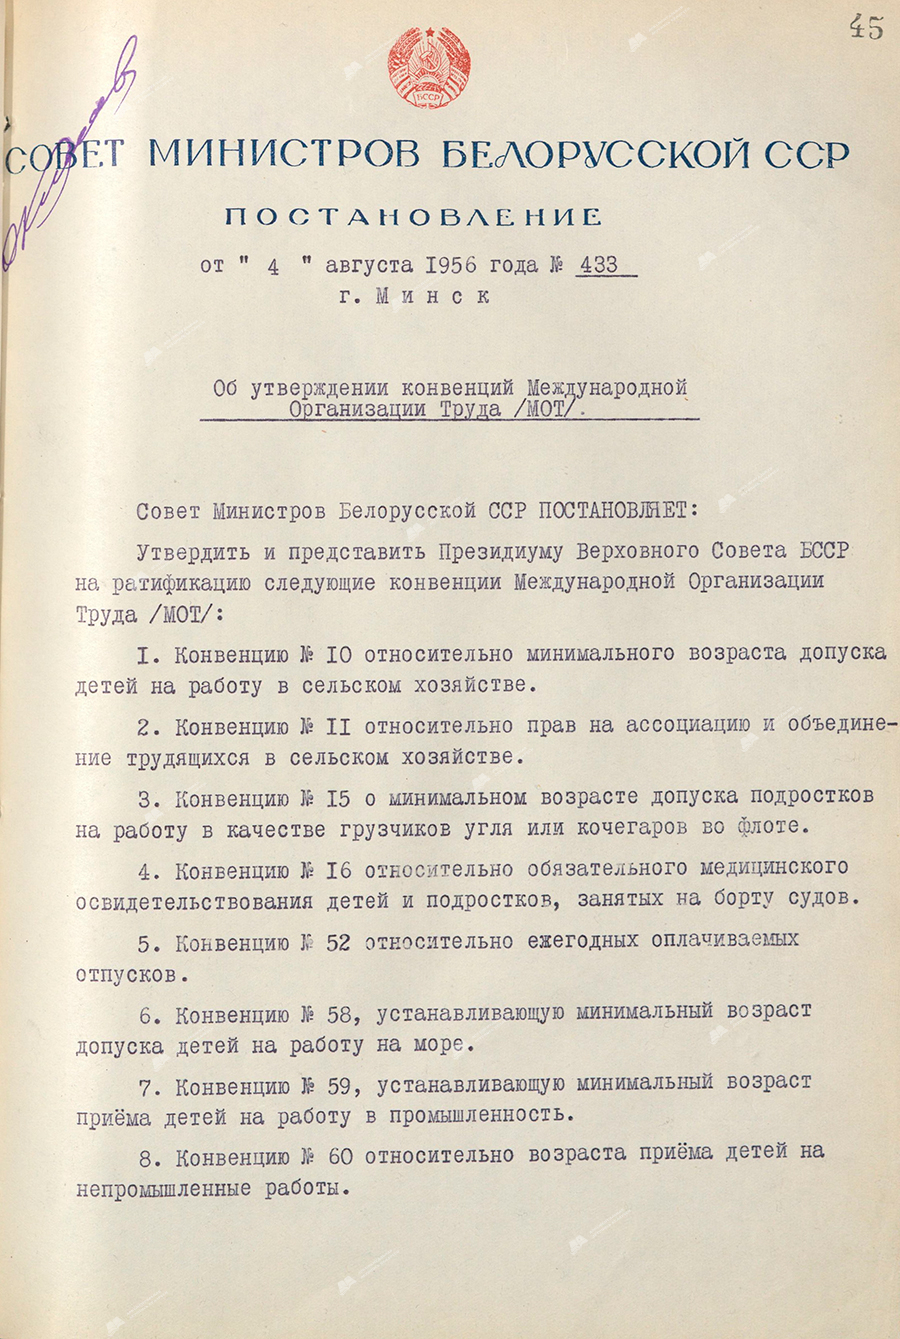 Beschluss Nr. 433 des Ministerrats der Weißrussischen SSR «Über die Genehmigung der Übereinkommen der Internationalen Arbeitsorganisation (ILO)»-стр. 0